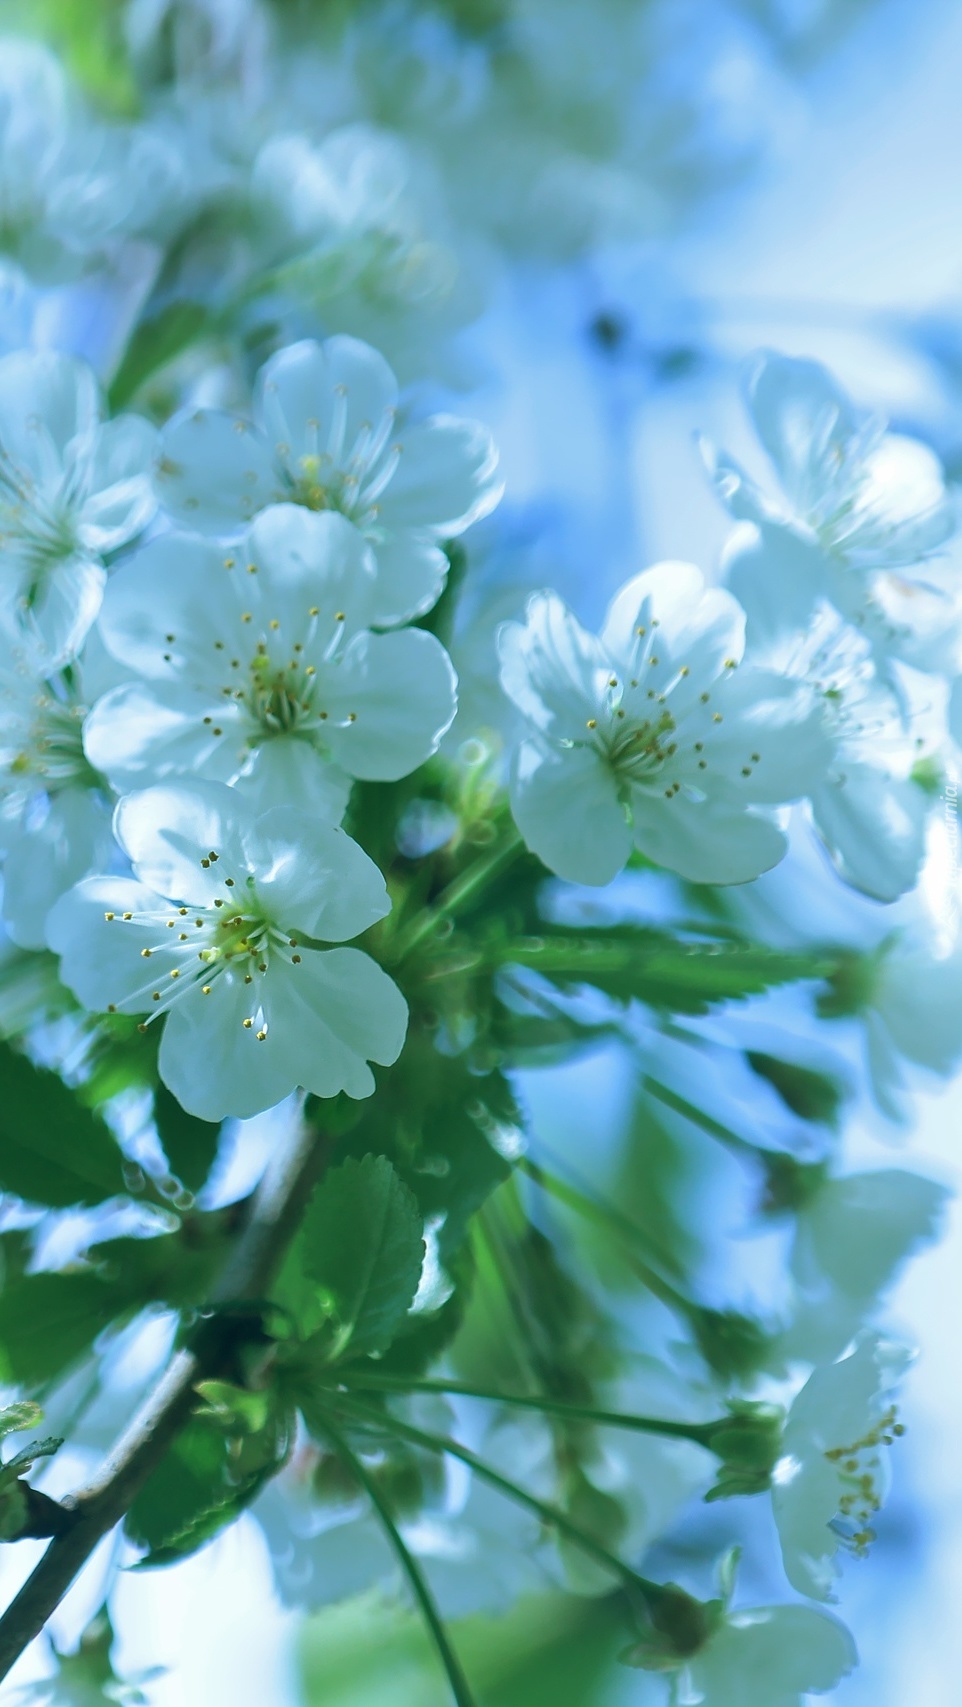 Gałązka białych kwiatów